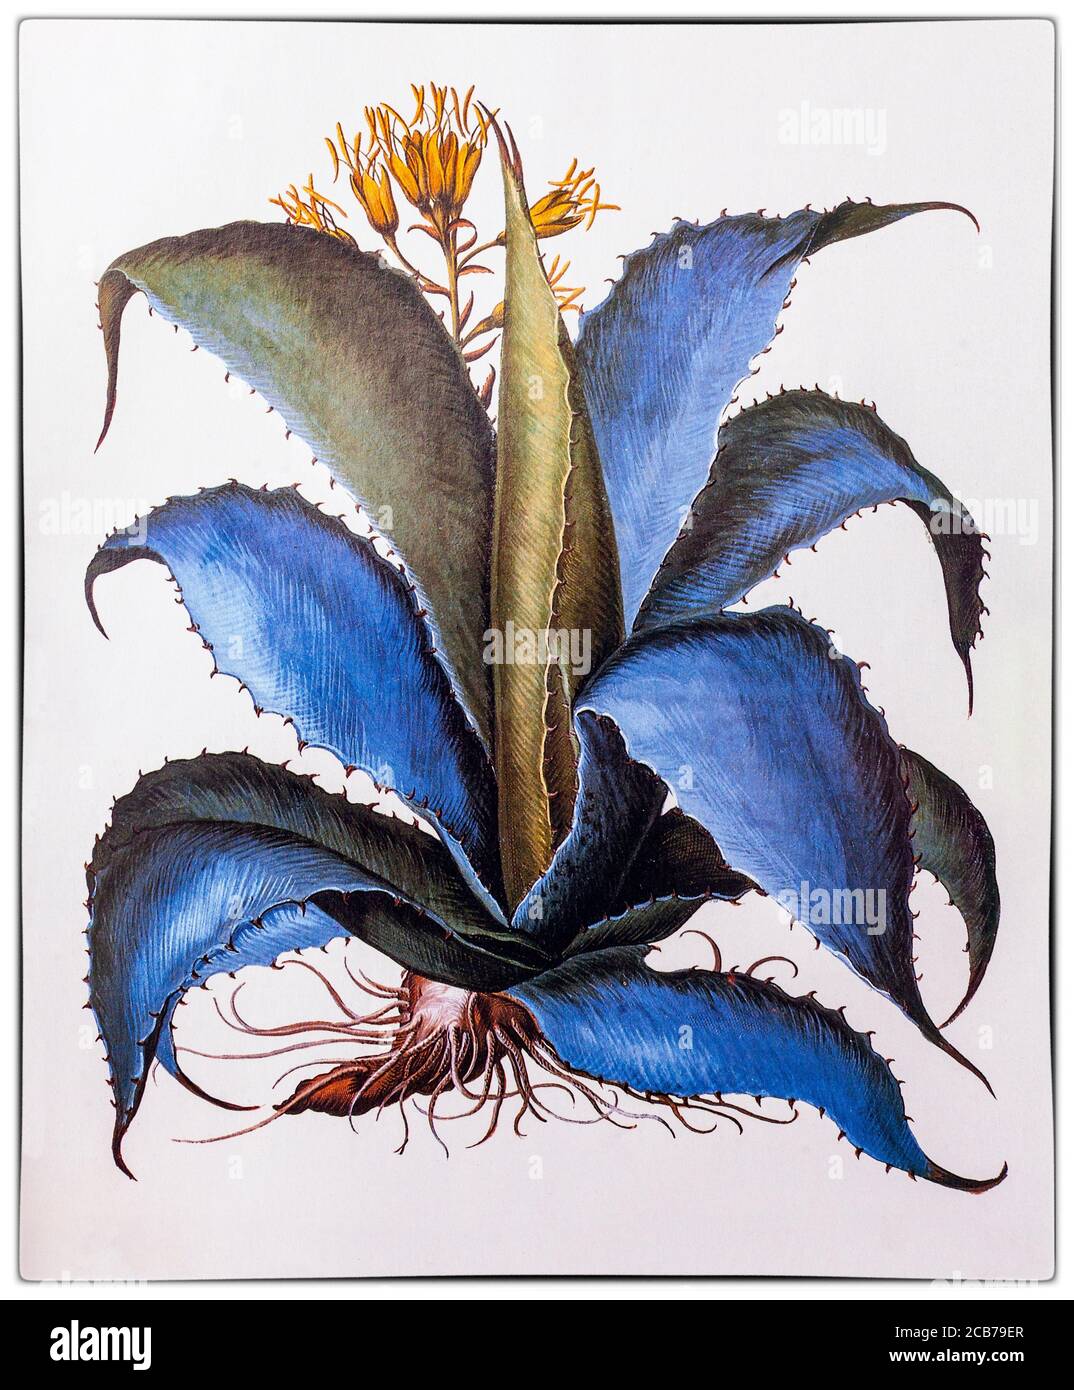 Agave americana aka American Aloe von Charles de l'Ecuse aka Clusius (1526-1609) Direktor des Botanischen Gartens Leiden in Holland angebaut. Die Illustration stammt aus Florilegium, einem prächtigen Bilddokument der Blumen, das erstmals 1613 von Basilius Besler (1561–1629) veröffentlicht wurde. Stockfoto